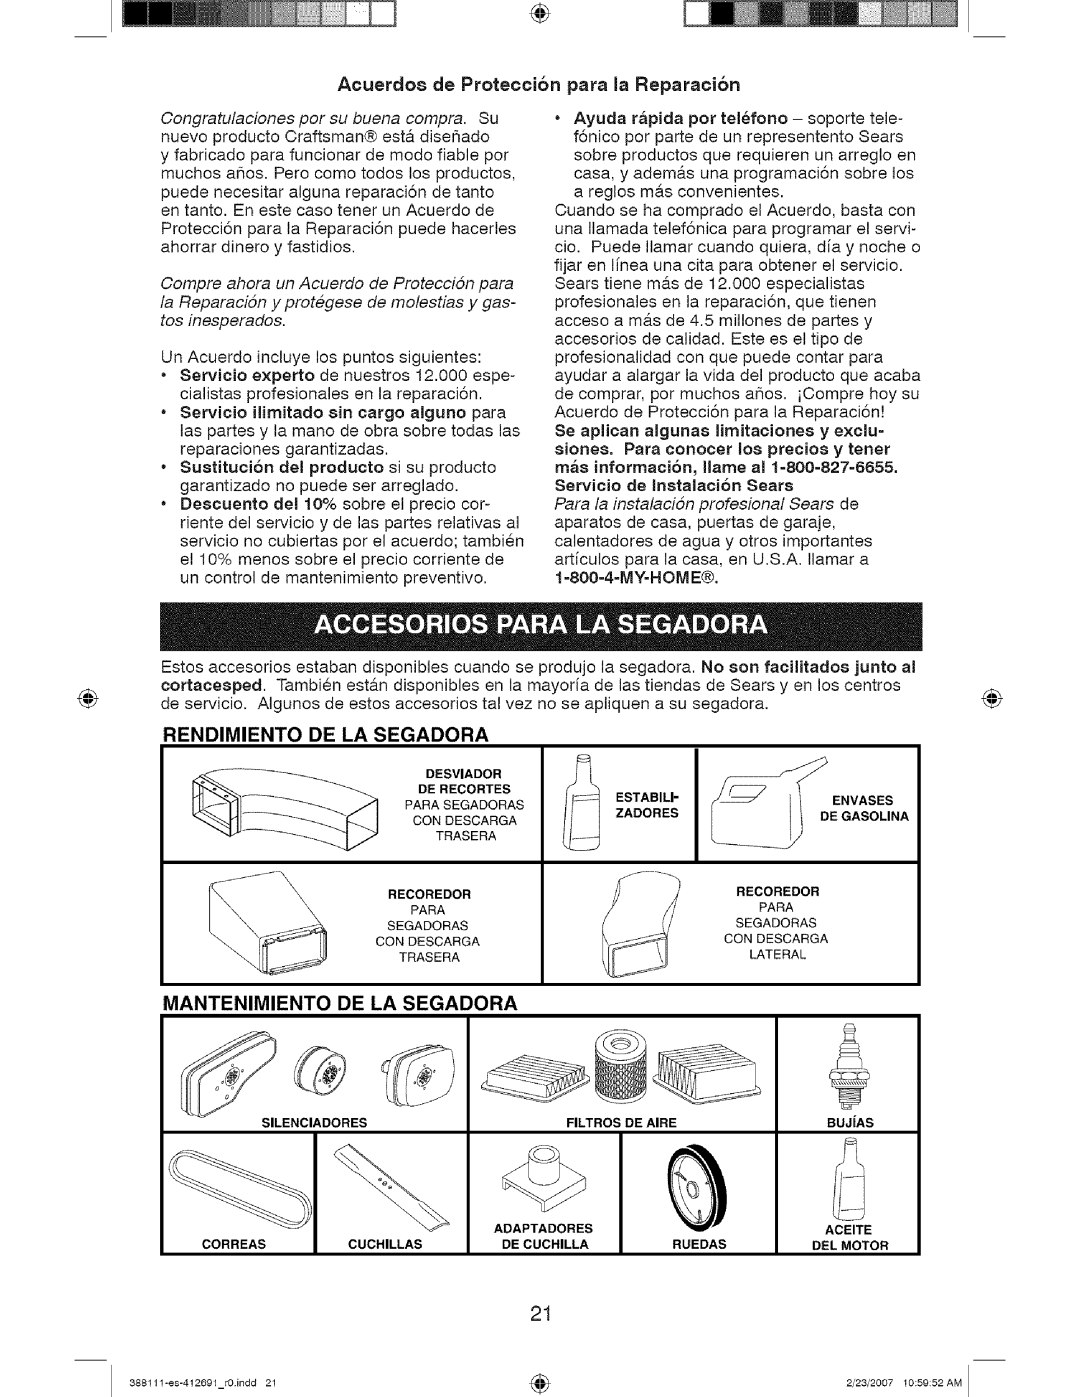 Craftsman 917 388111 owner manual Acuerdo8 de Proteccion para la Reparacion, Rendimiento, De La Segadora, Mantenimiento 